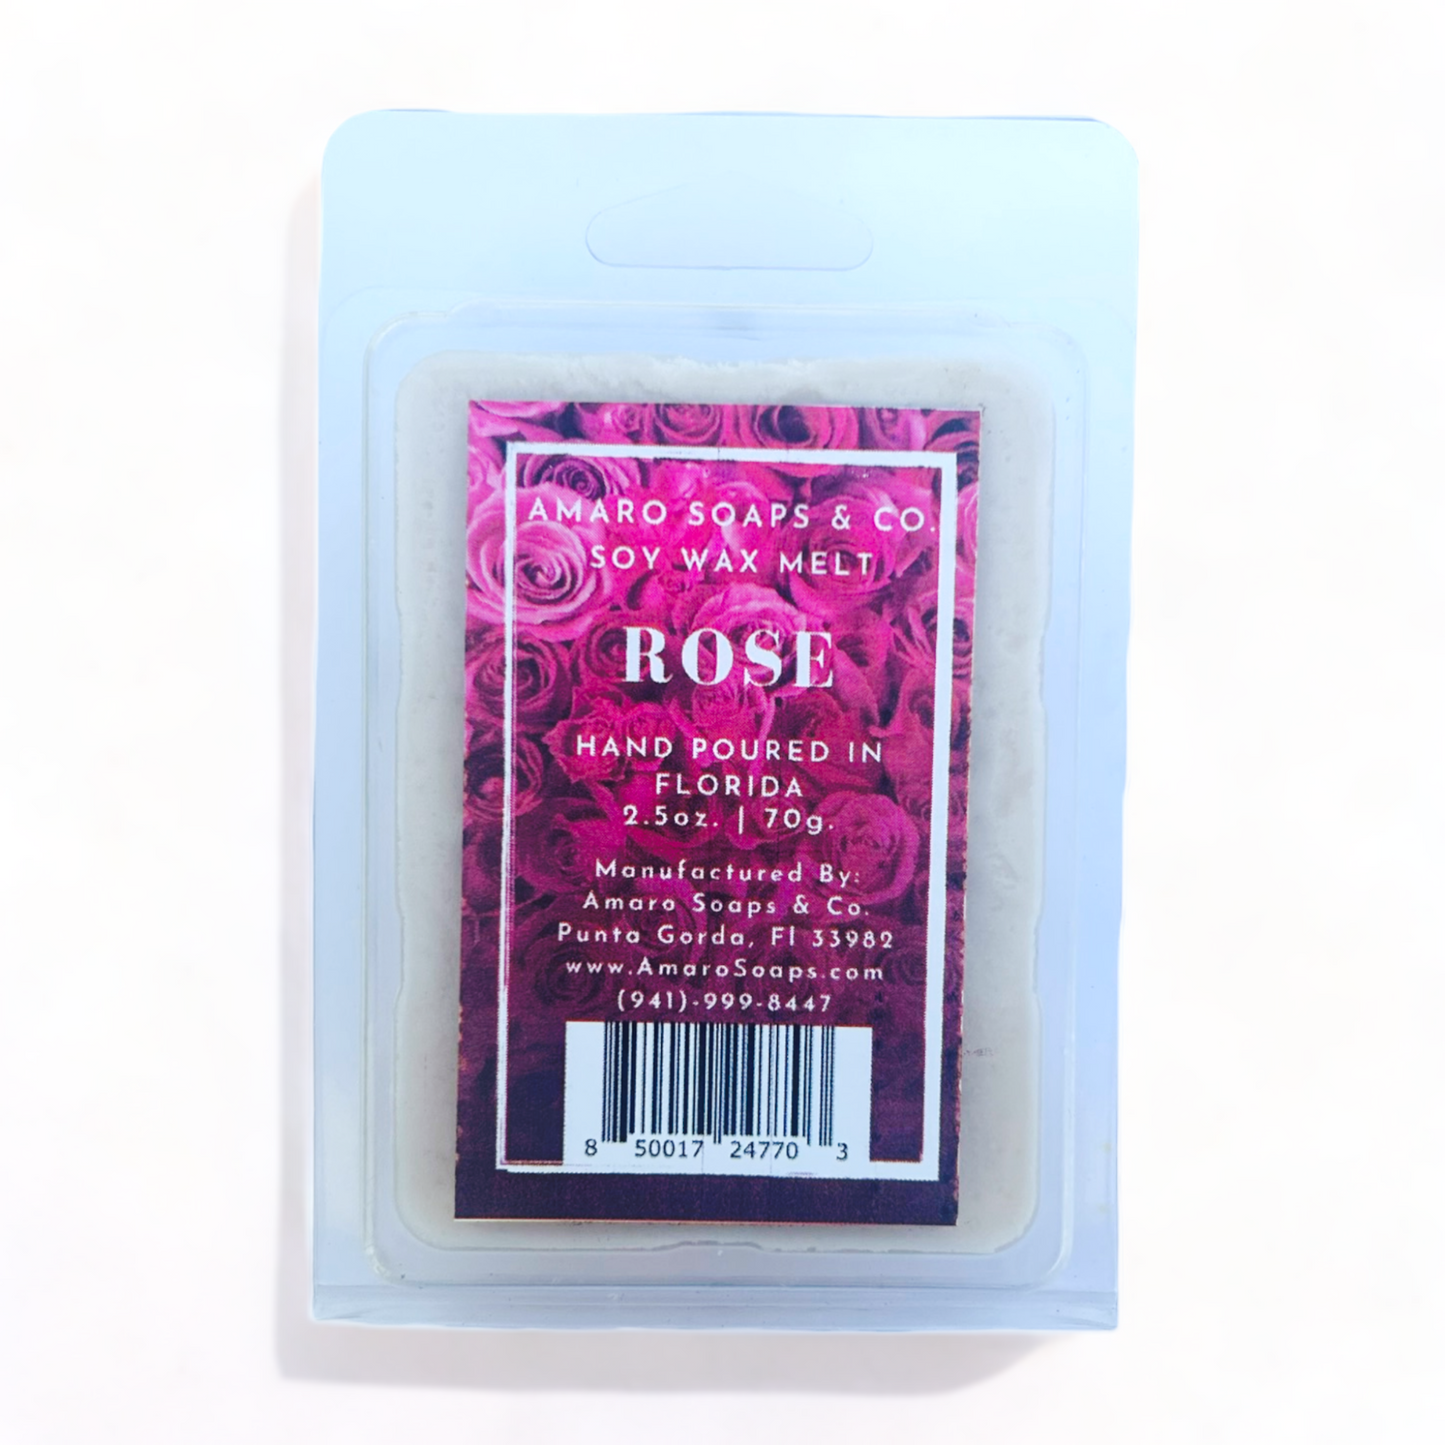 Rose Soy Wax Melt